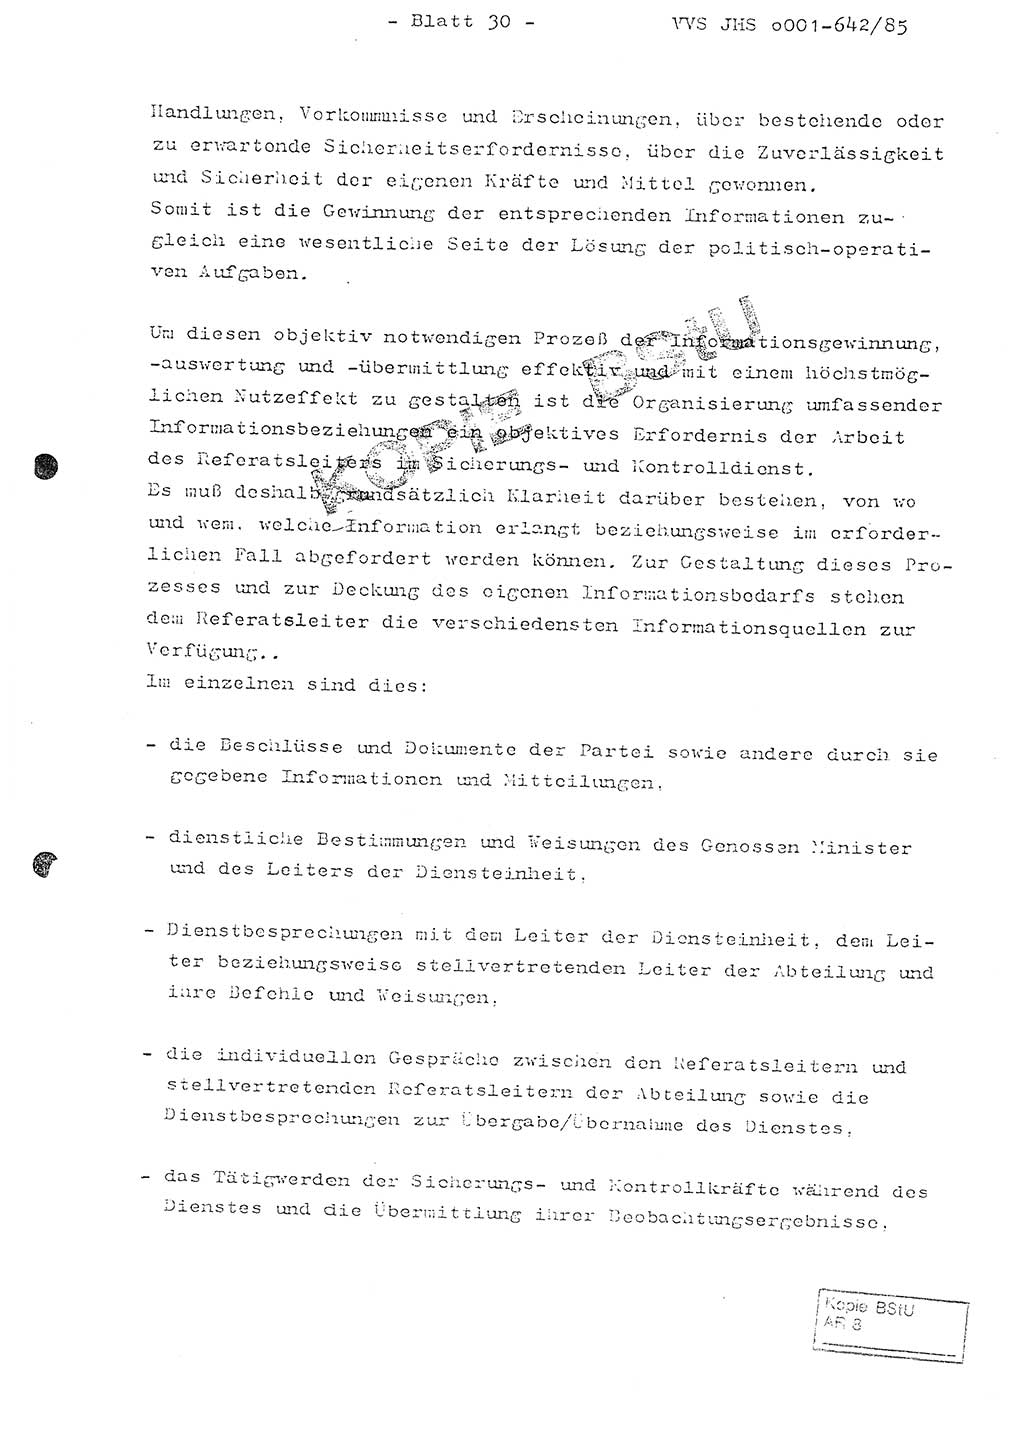 Fachschulabschlußarbeit Oberleutnant Lothar Fahland (Abt. ⅩⅣ), Ministerium für Staatssicherheit (MfS) [Deutsche Demokratische Republik (DDR)], Juristische Hochschule (JHS), Vertrauliche Verschlußsache (VVS) o001-642/85, Potsdam 1985, Blatt 30 (FS-Abschl.-Arb. MfS DDR JHS VVS o001-642/85 1985, Bl. 30)